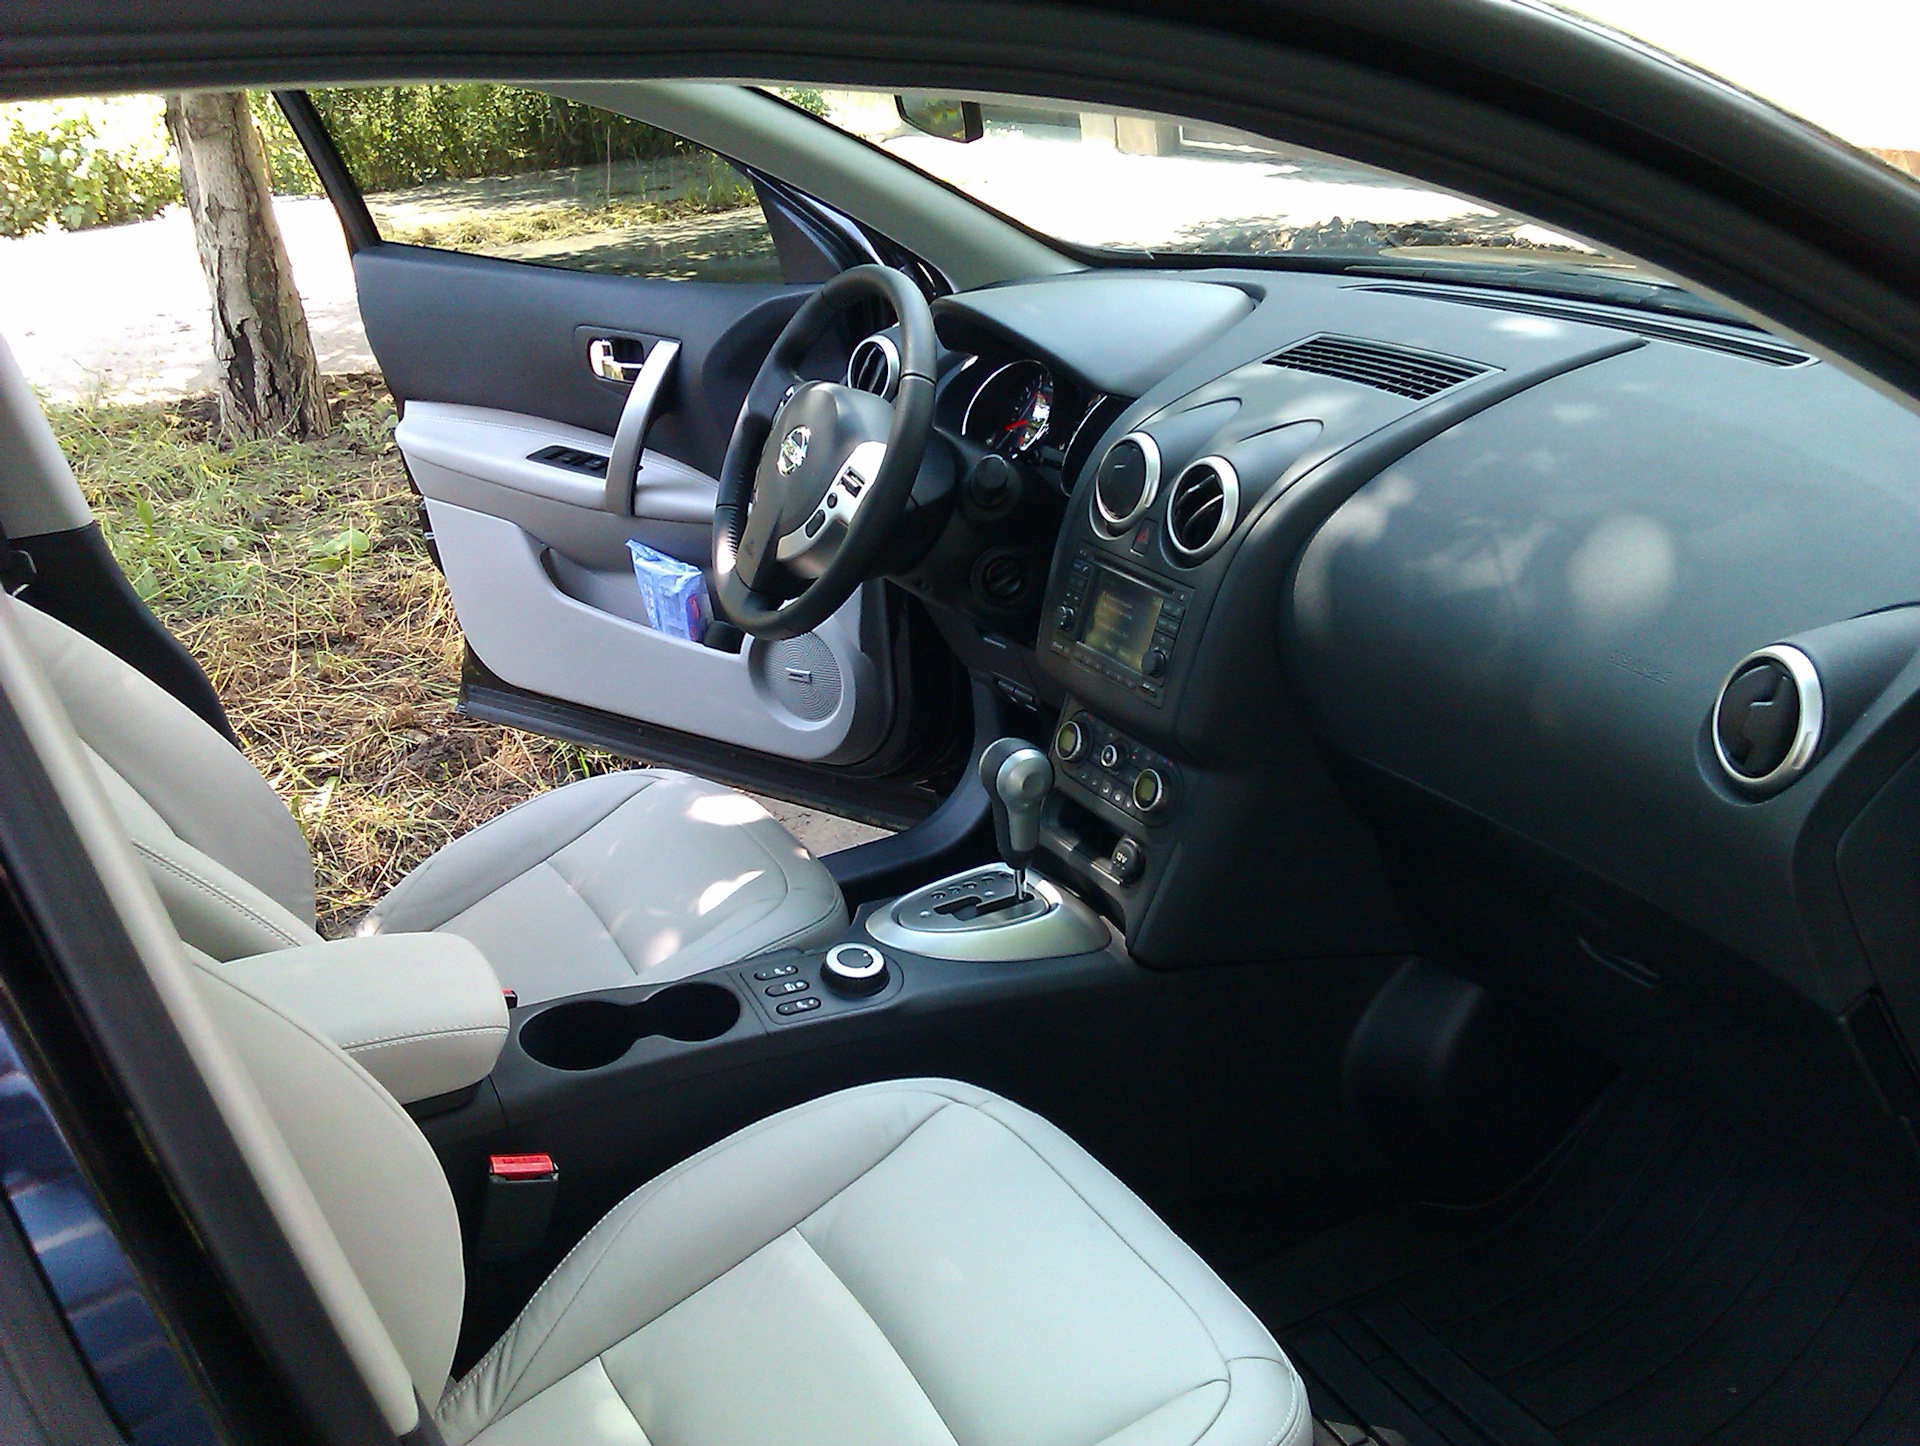 Ниссан английской сборки. Nissan Qashqai 2012 Interior. Кашкай 2008 интерьер. Nissan Qashqai j10 le+. Ниссан Кашкай интерьер.